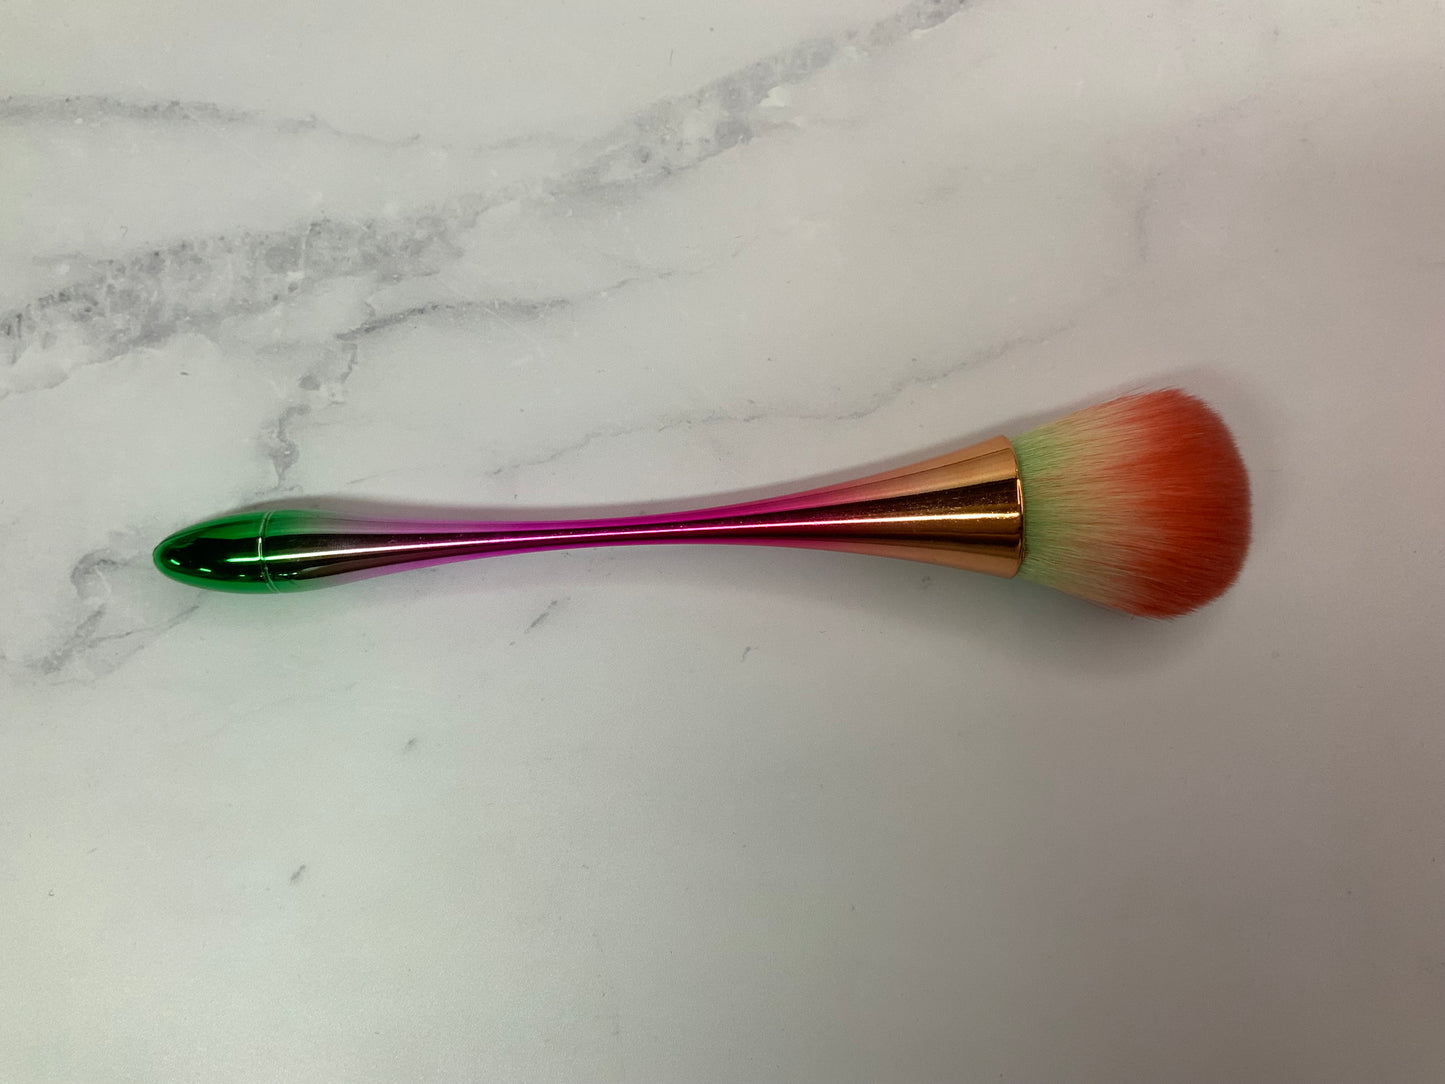 Rainbow cleaning brush